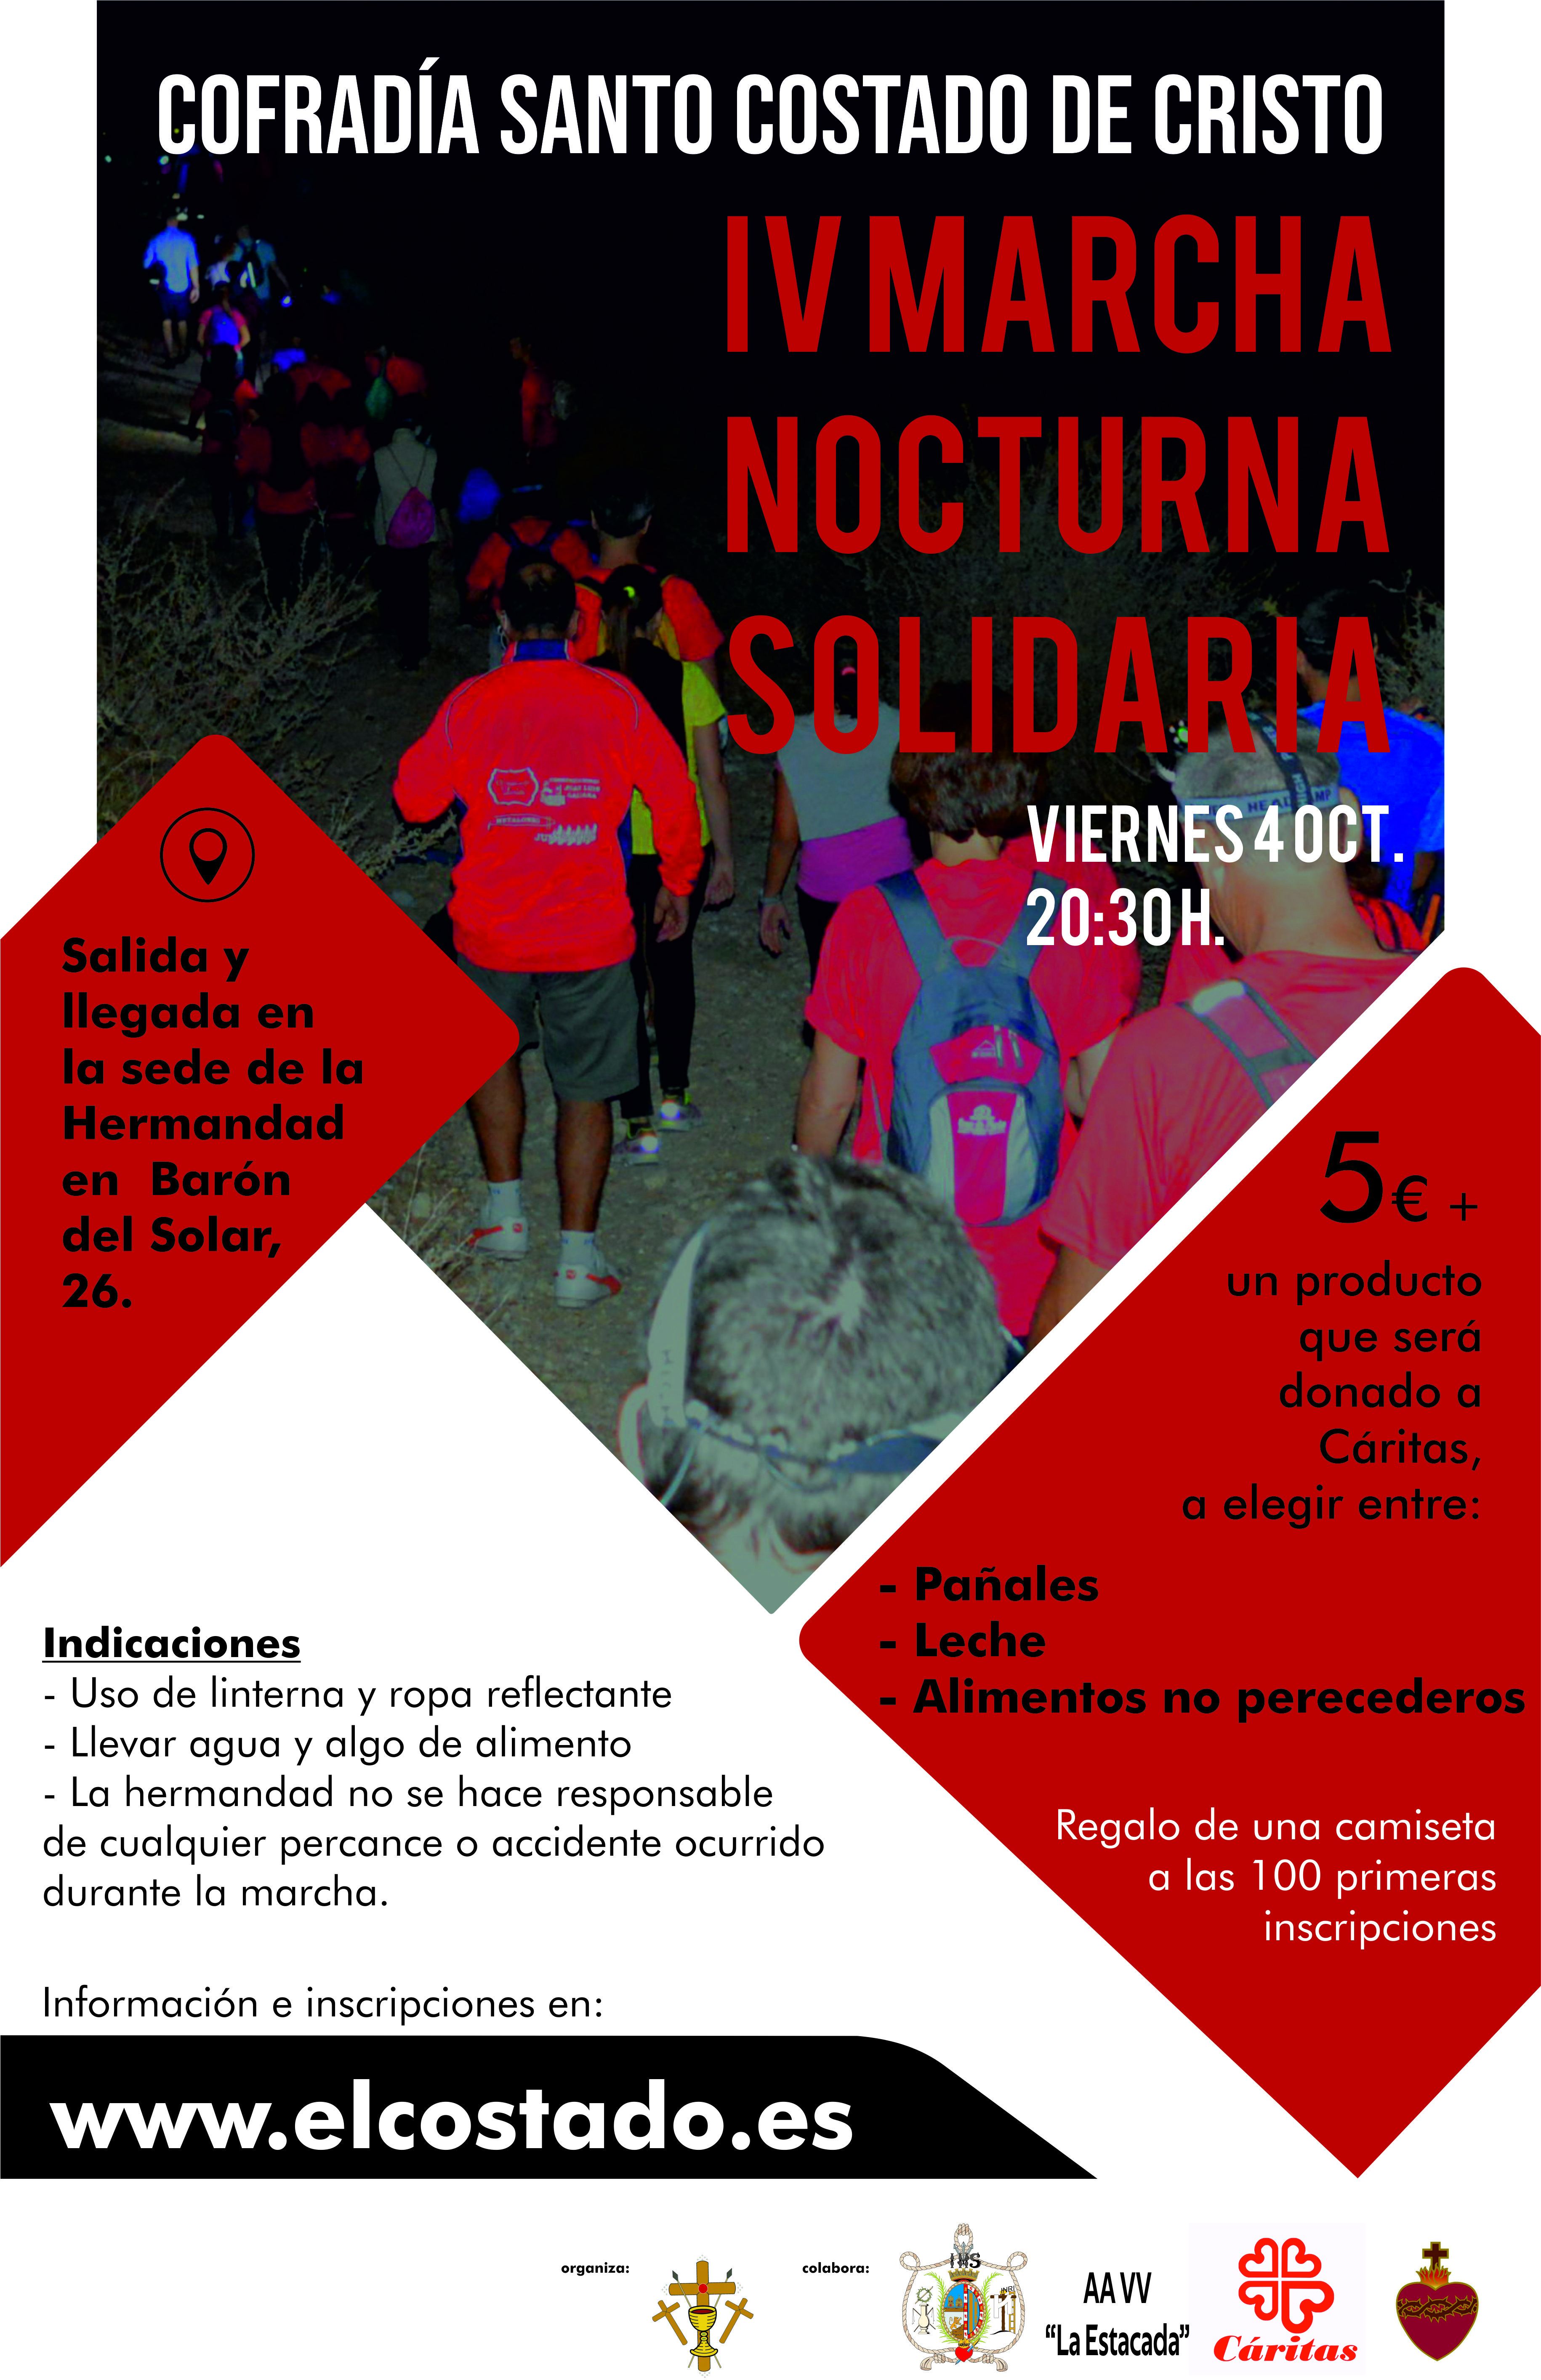 La Marcha Nocturna del Santo Costado tendrá lugar el 4 de octubre